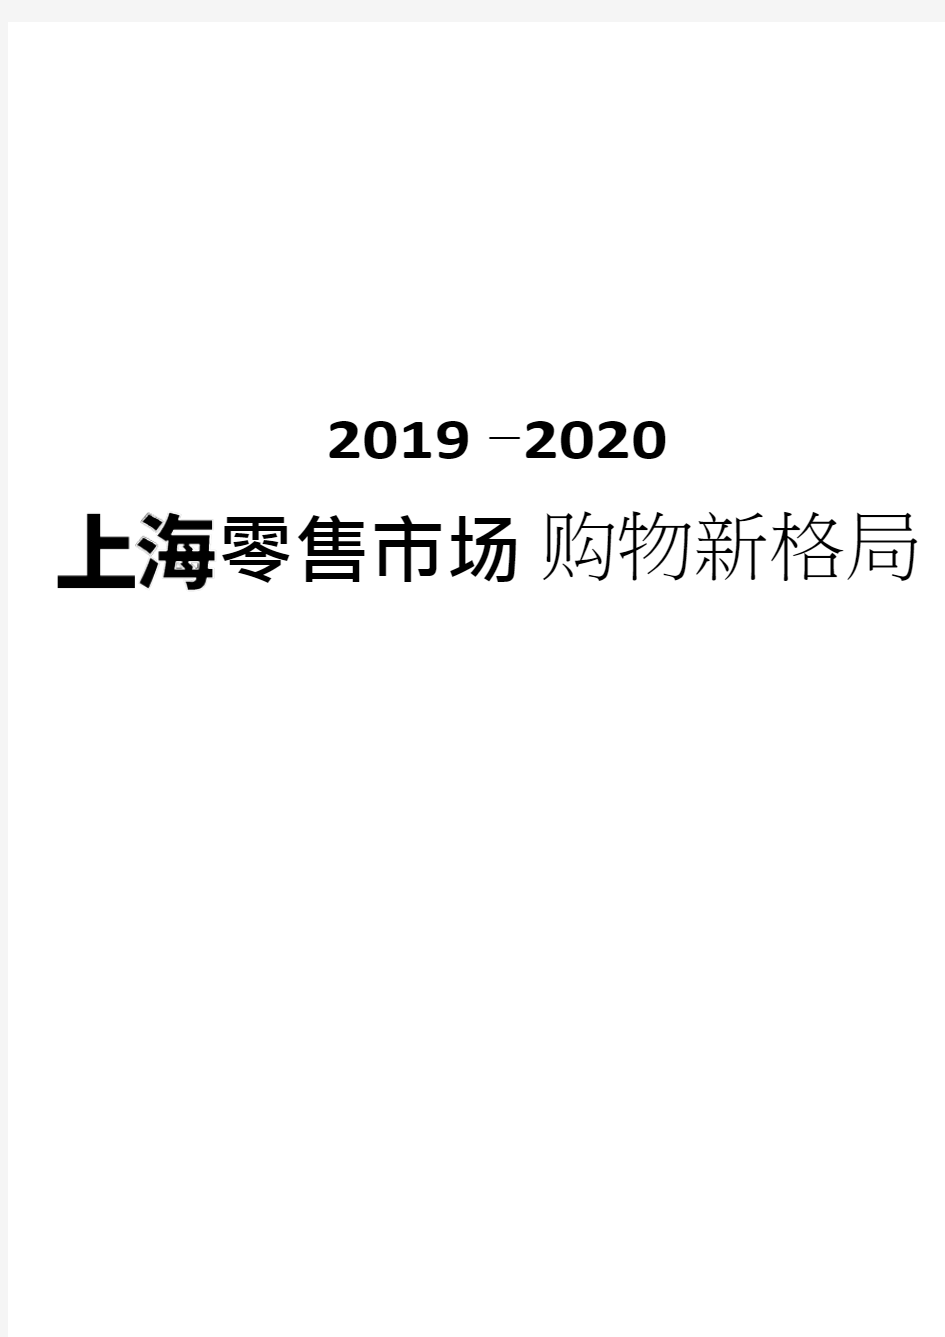 2019-2020年上海零售市场购物新格局